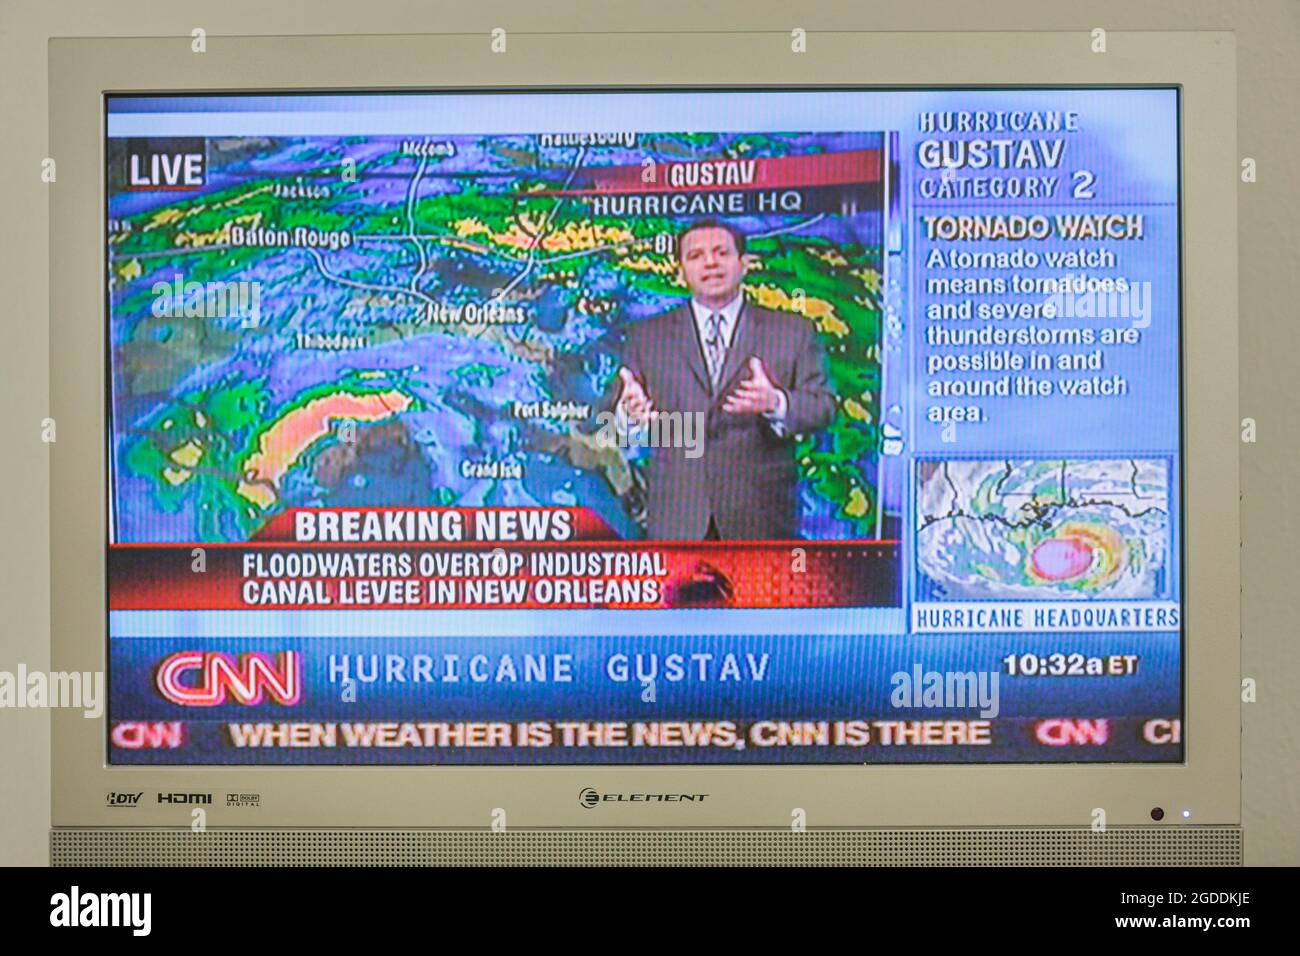 Televisione TV schermo monitor CNN Hurricane Gustav meteorologo meteo, Ciad Myers Live segnalazione New Orleans flooding categoria 2 orologio tornado Foto Stock